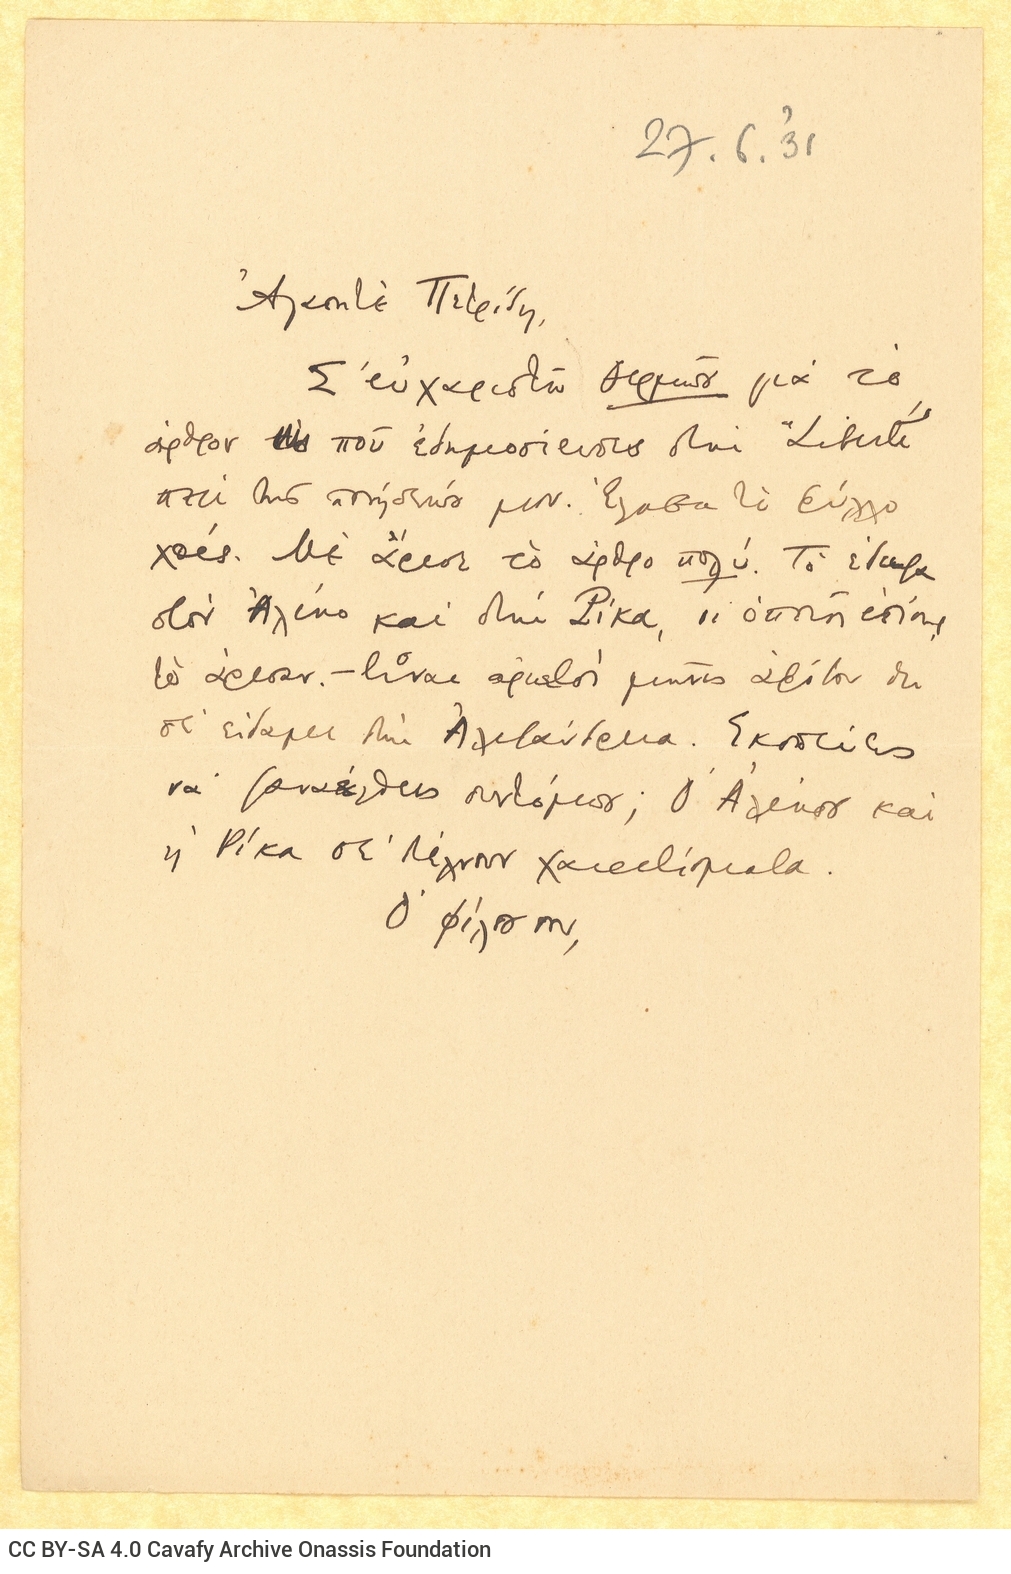 Χειρόγραφο σχέδιο επιστολής του Καβάφη προς τον [Σ. Π.] Πετρίδη. Πρόκε